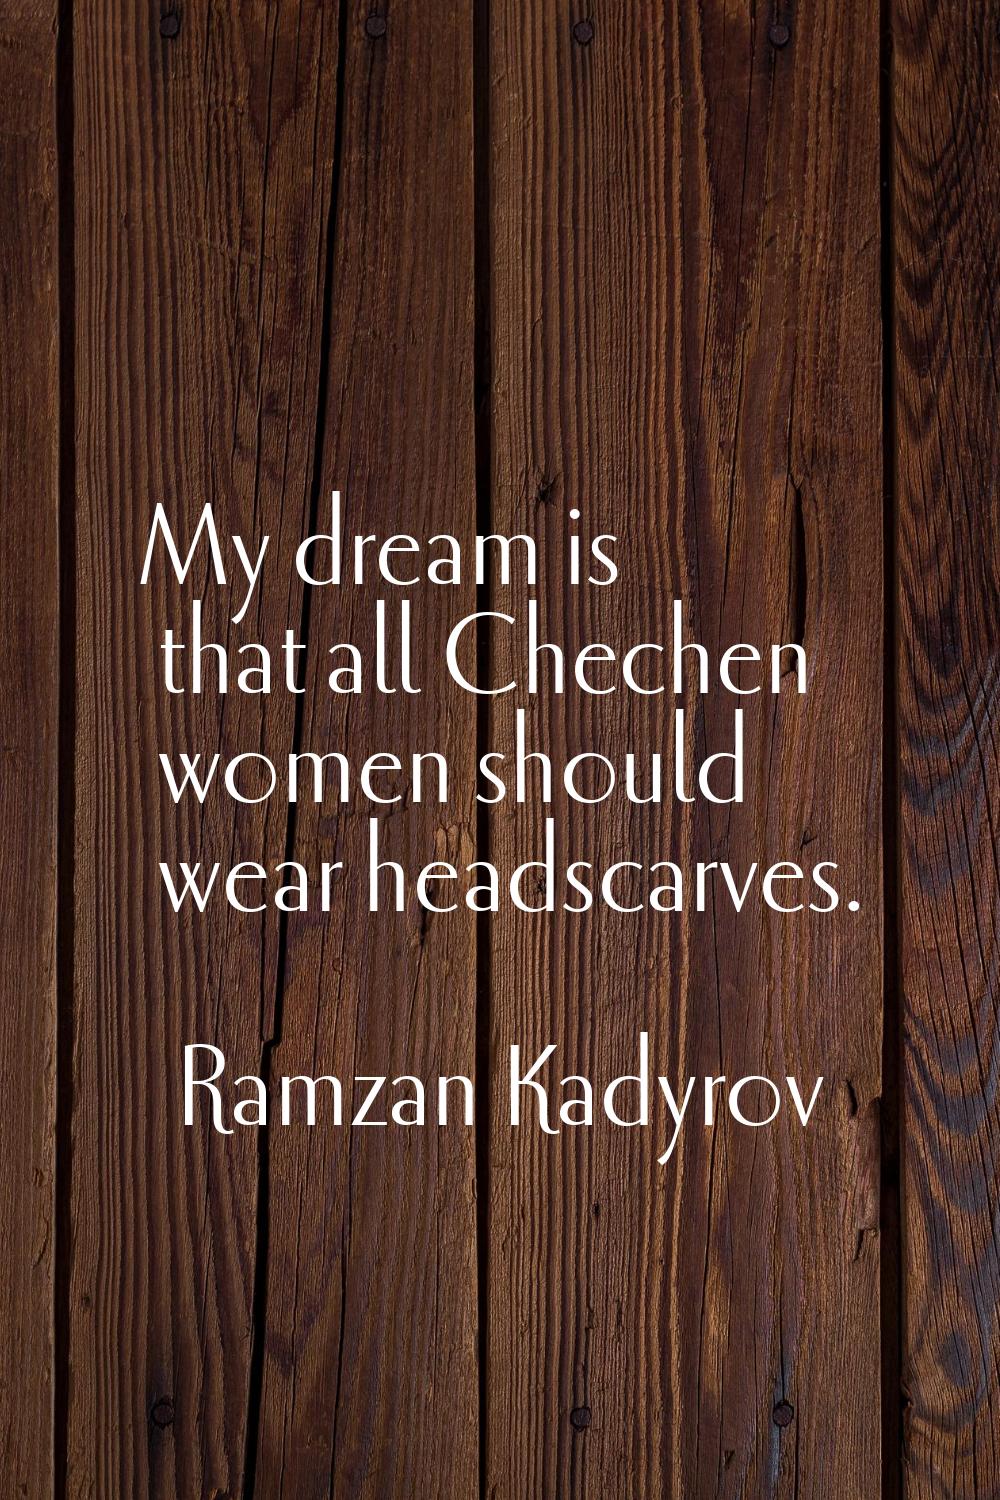 My dream is that all Chechen women should wear headscarves.